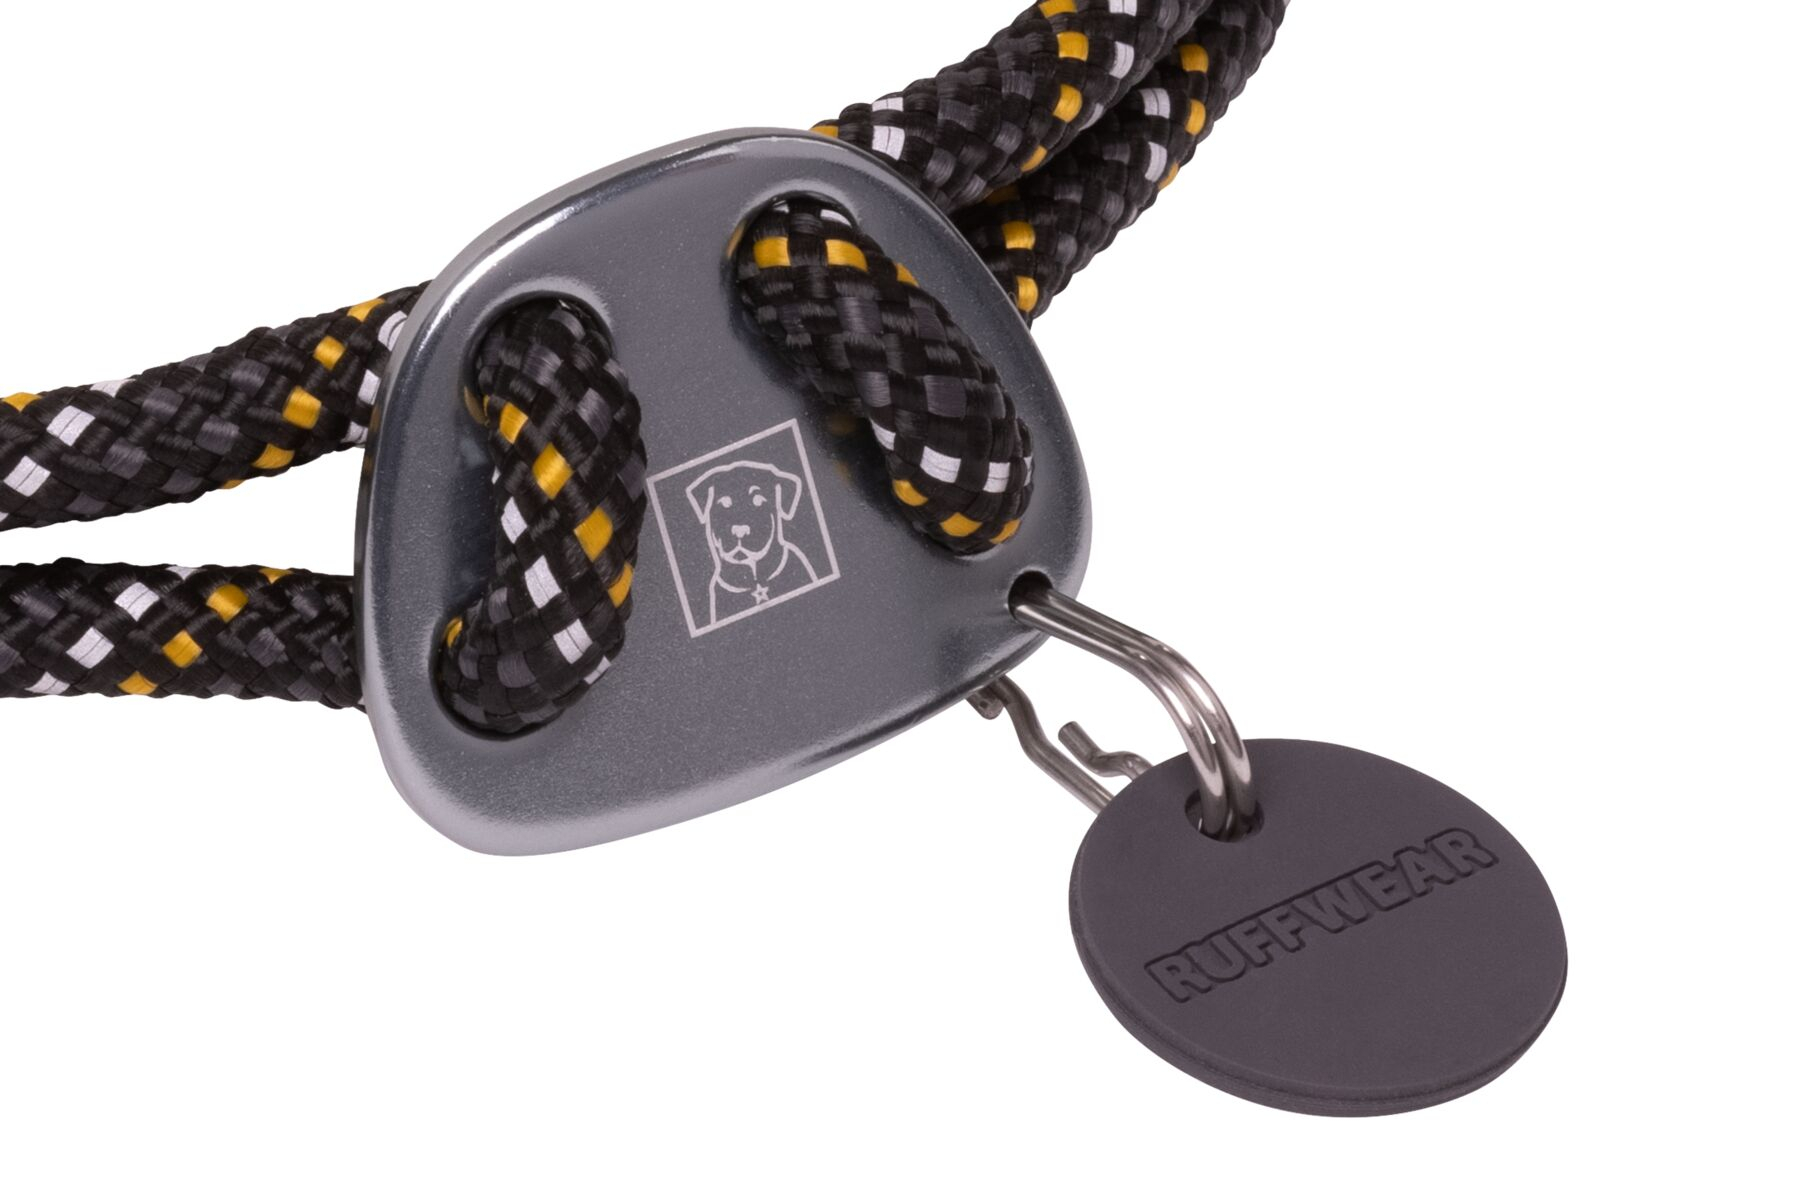 Collare Knot-a-collar di Ruffwear Obsidian Black - diverse taglie disponibili